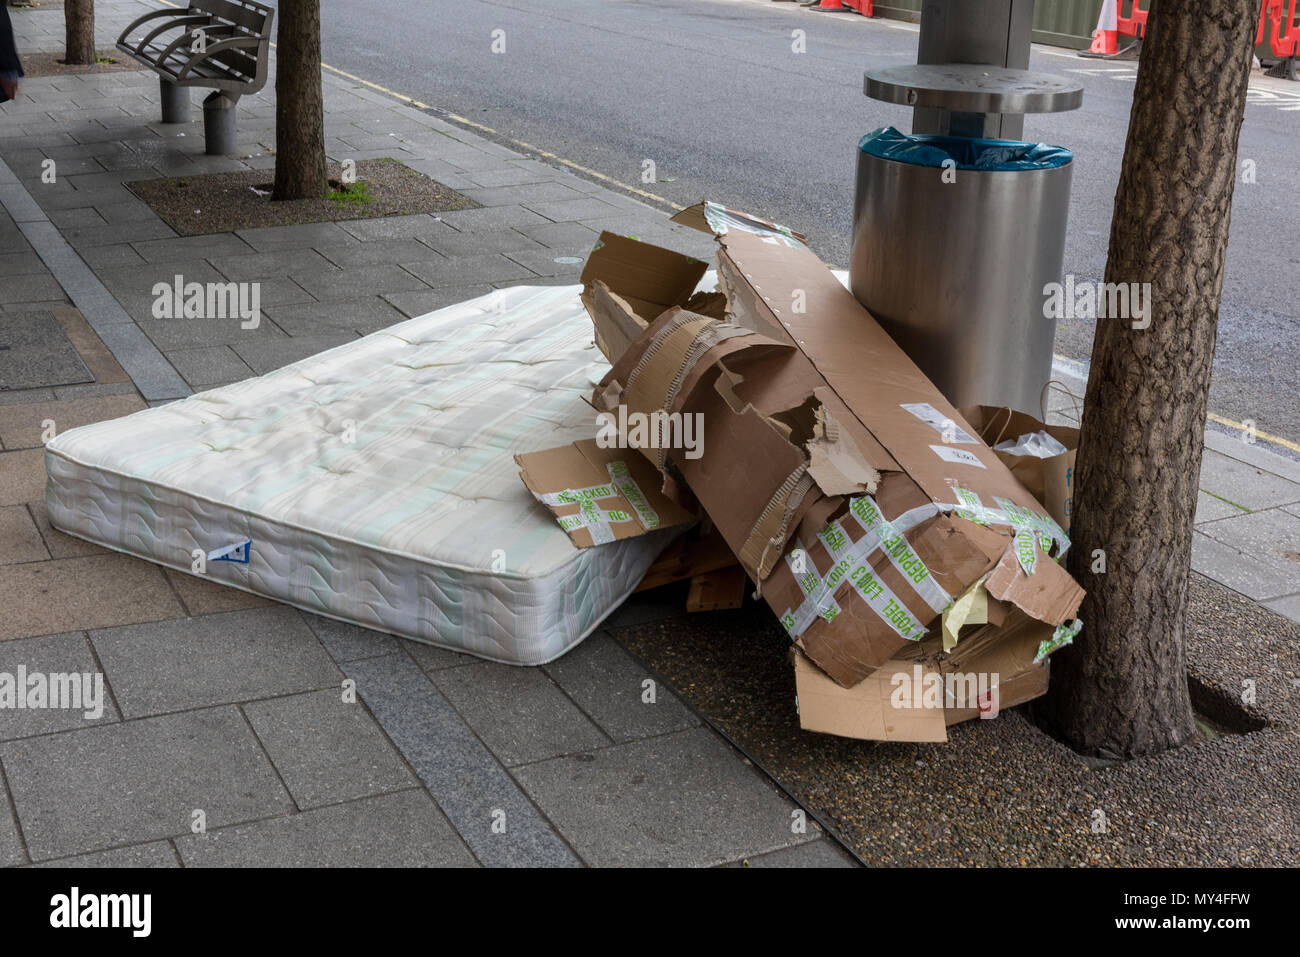 Schuttplatz in London, einschließlich einer Matratze und alte Kartonagen, unverantwortlich kriminelle Aktivitäten Dumping illegaler Abfall auf der Straße. Stockfoto